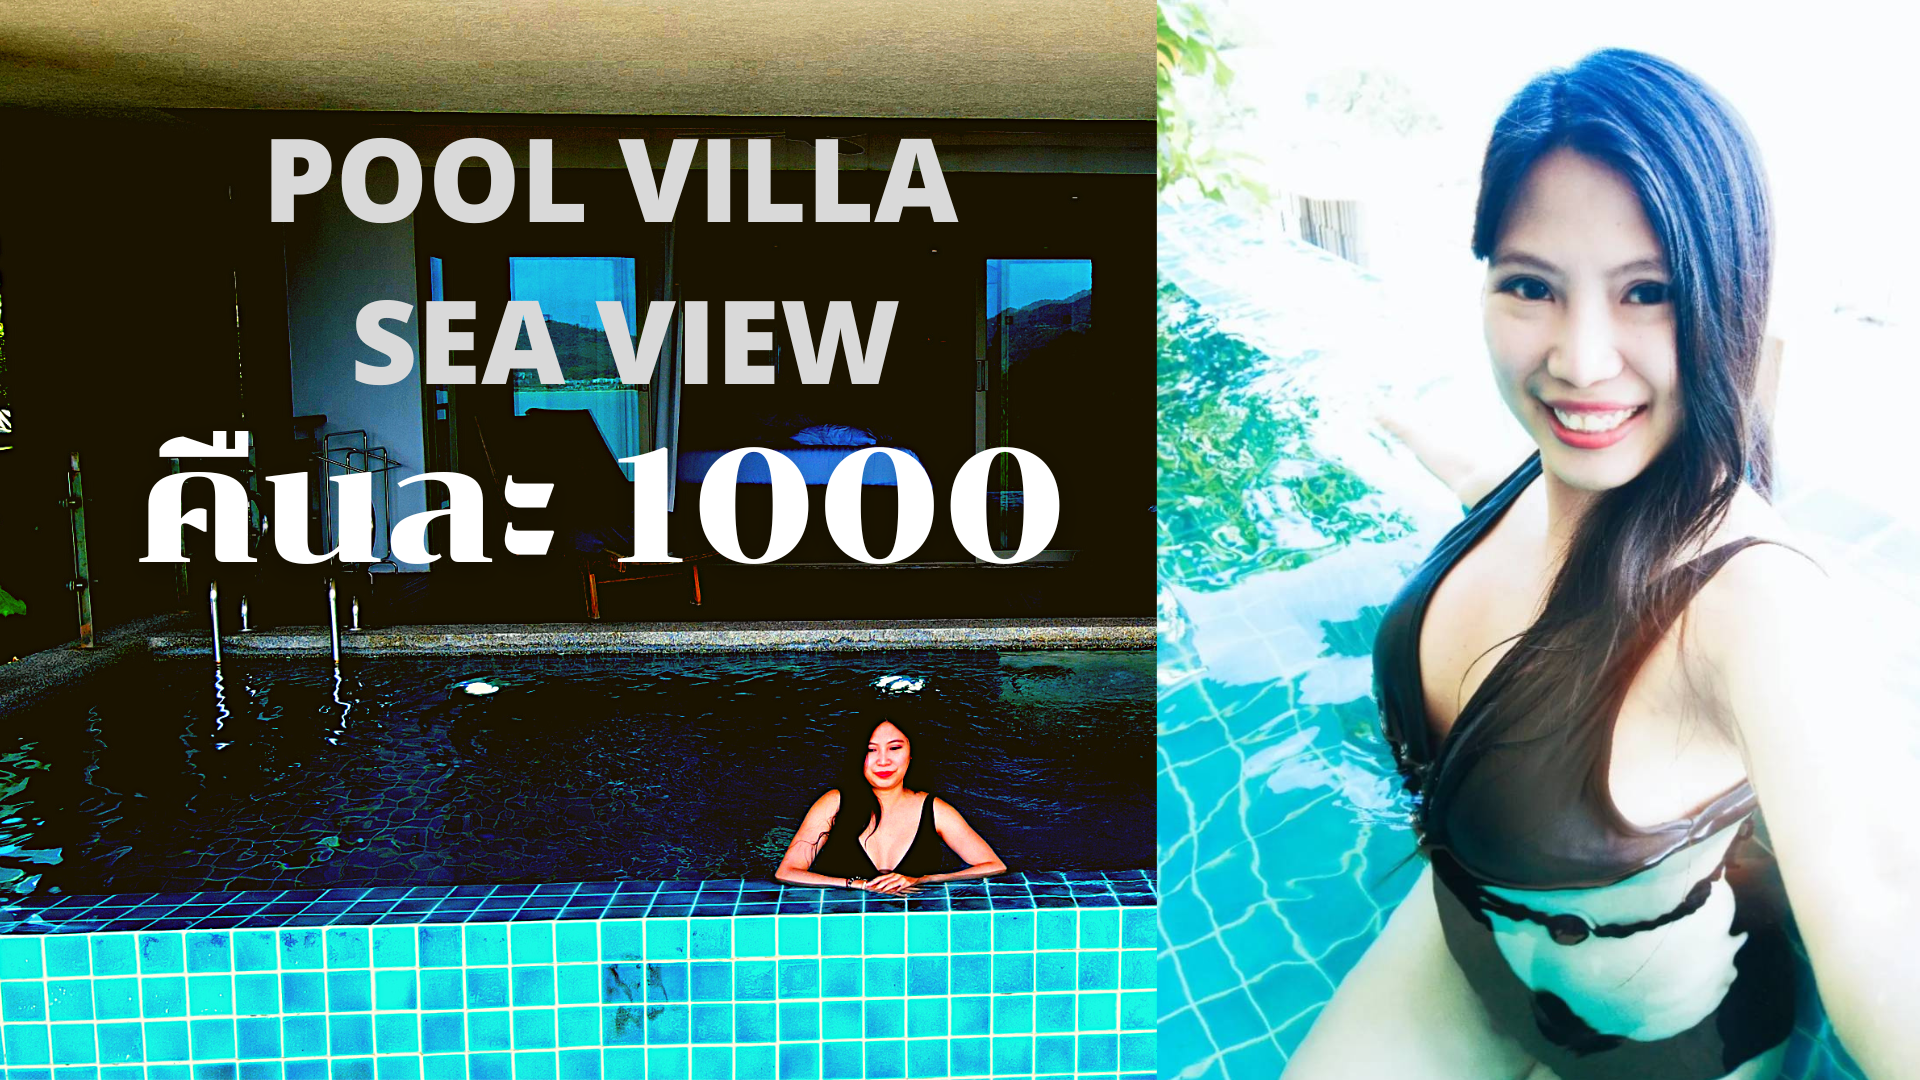 นอนโรงแรม 5 ดาวที่ภูเก็ต ห้อง poolvilla+Sea view คืนละ 1000 บาท